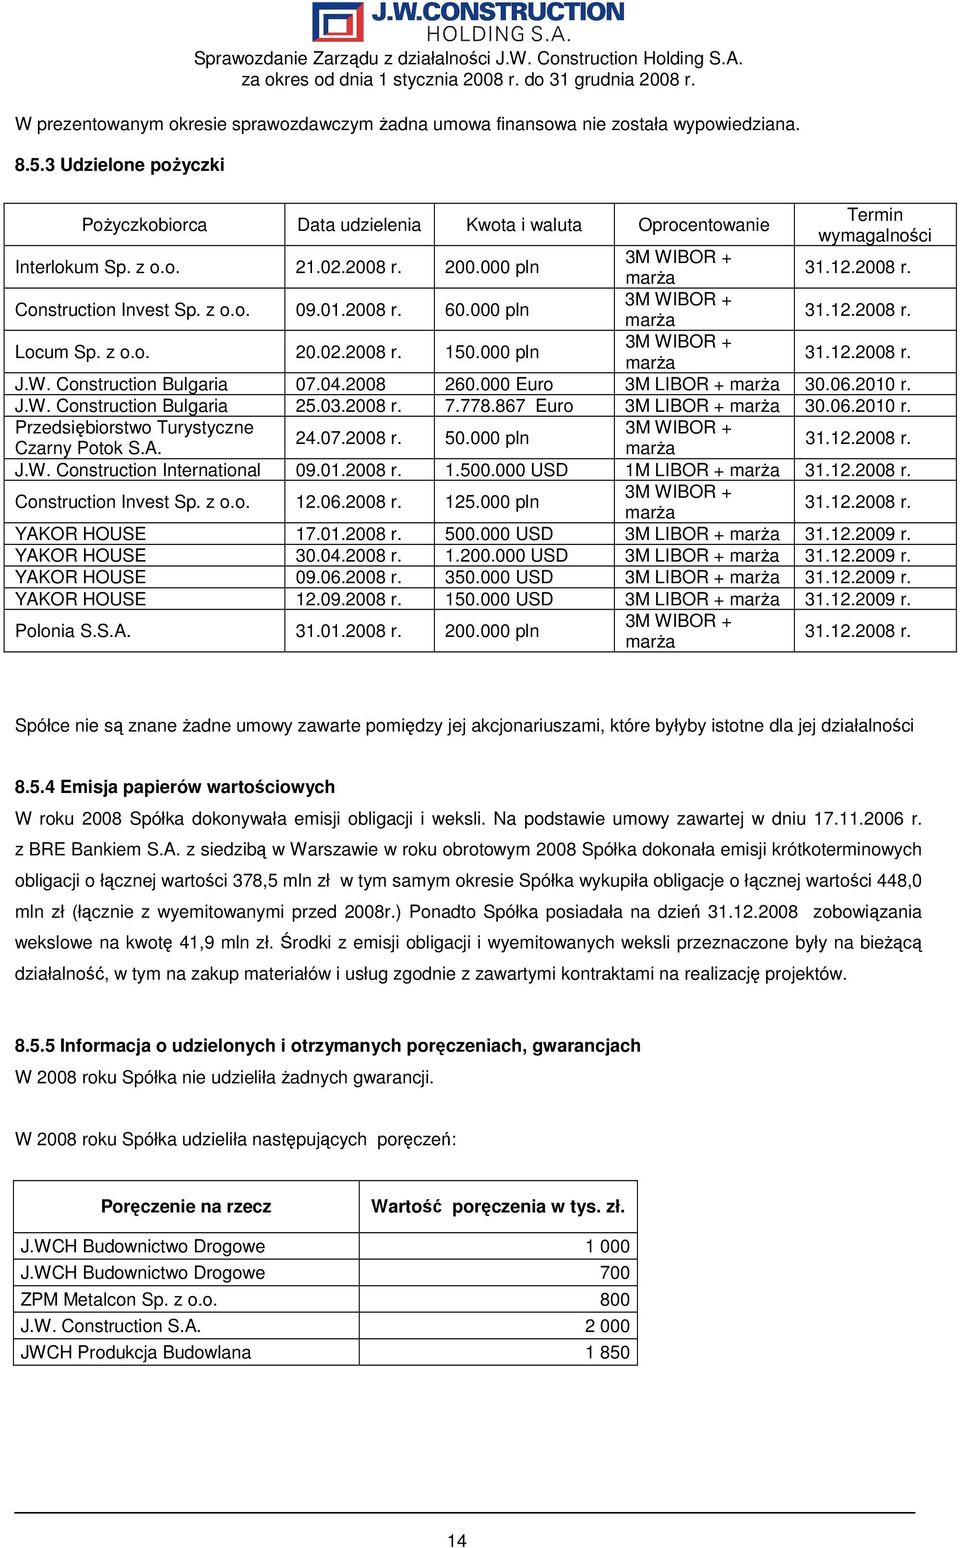 z o.o. 09.01.2008 r. 60.000 pln 3M WIBOR + marŝa 31.12.2008 r. Locum Sp. z o.o. 20.02.2008 r. 150.000 pln 3M WIBOR + marŝa 31.12.2008 r. J.W. Construction Bulgaria 07.04.2008 260.